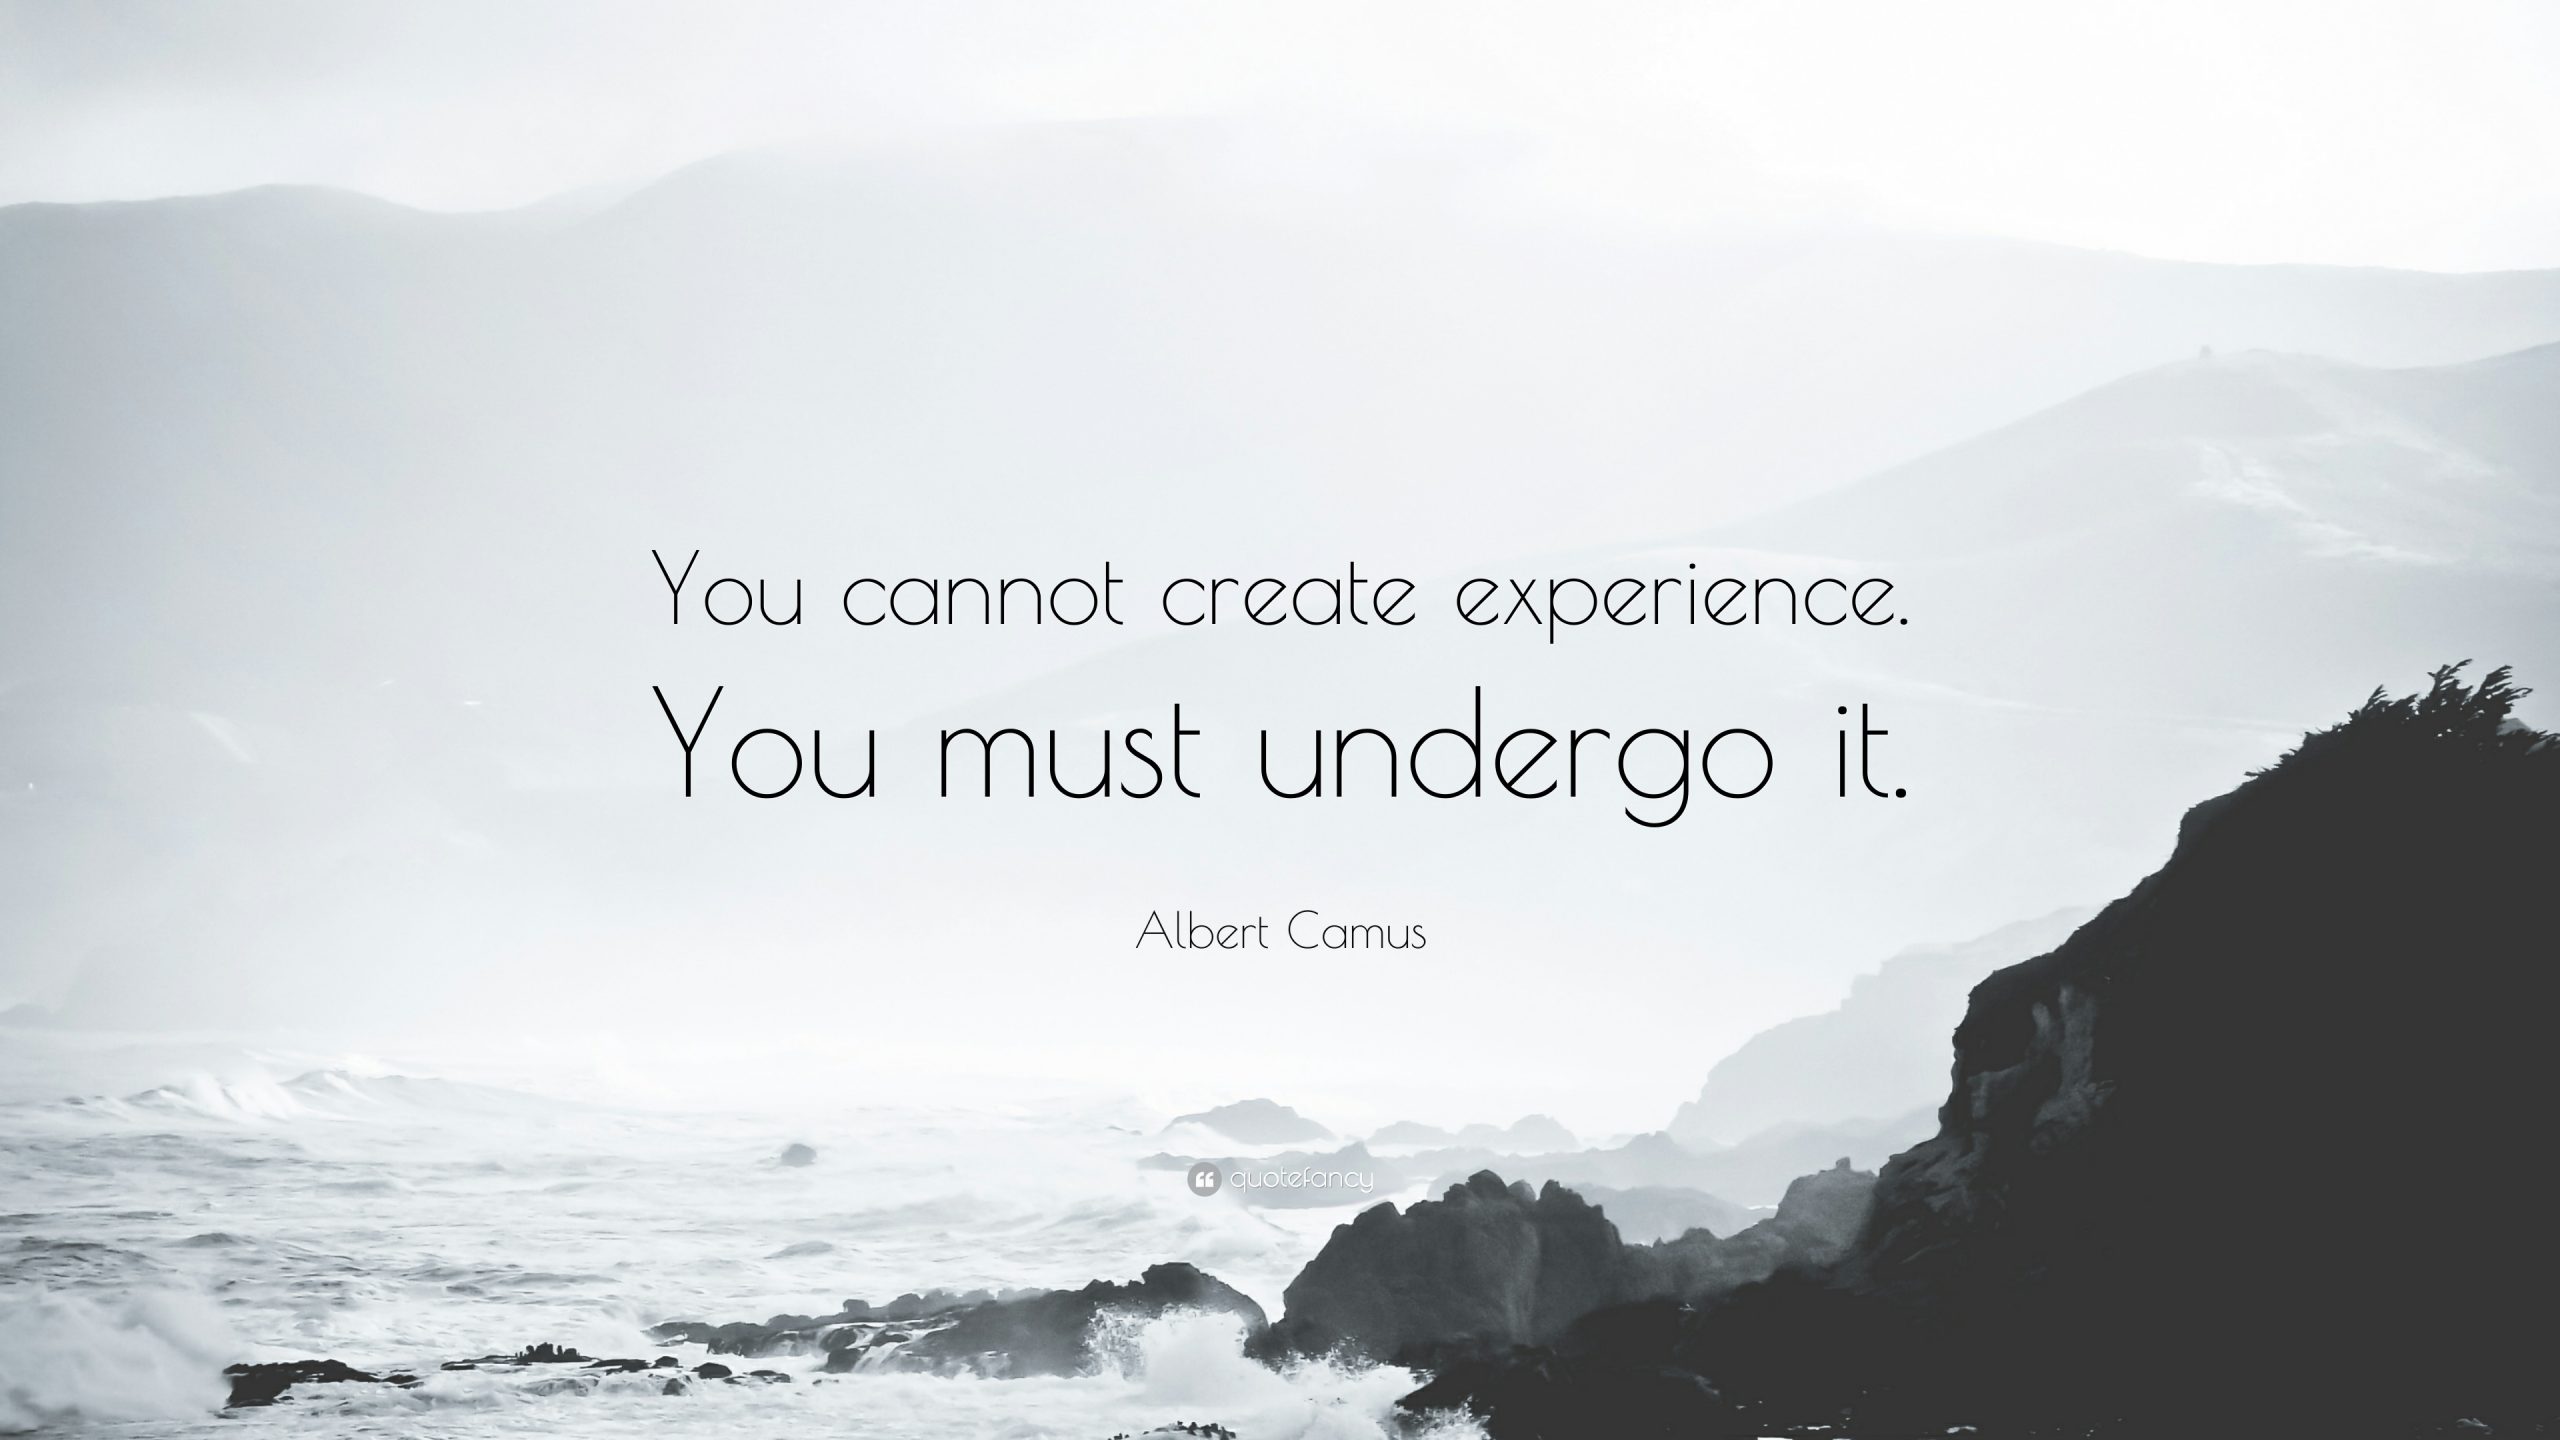 Camus on Experience